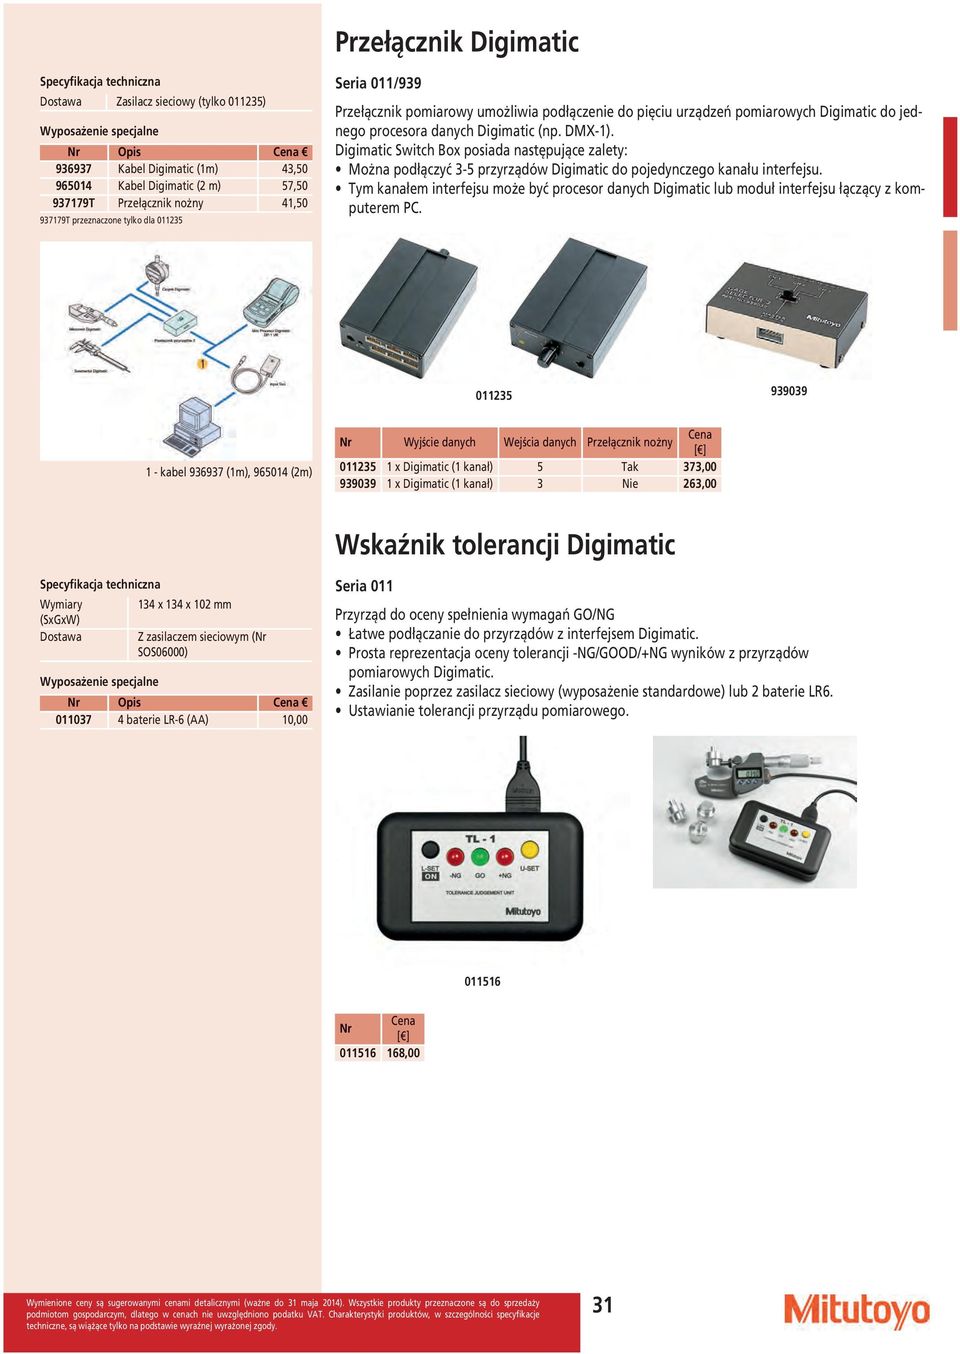 Digimatic Switch Box posiada następujące zalety: Można podłączyć 3-5 przyrządów Digimatic do pojedynczego kanału interfejsu.